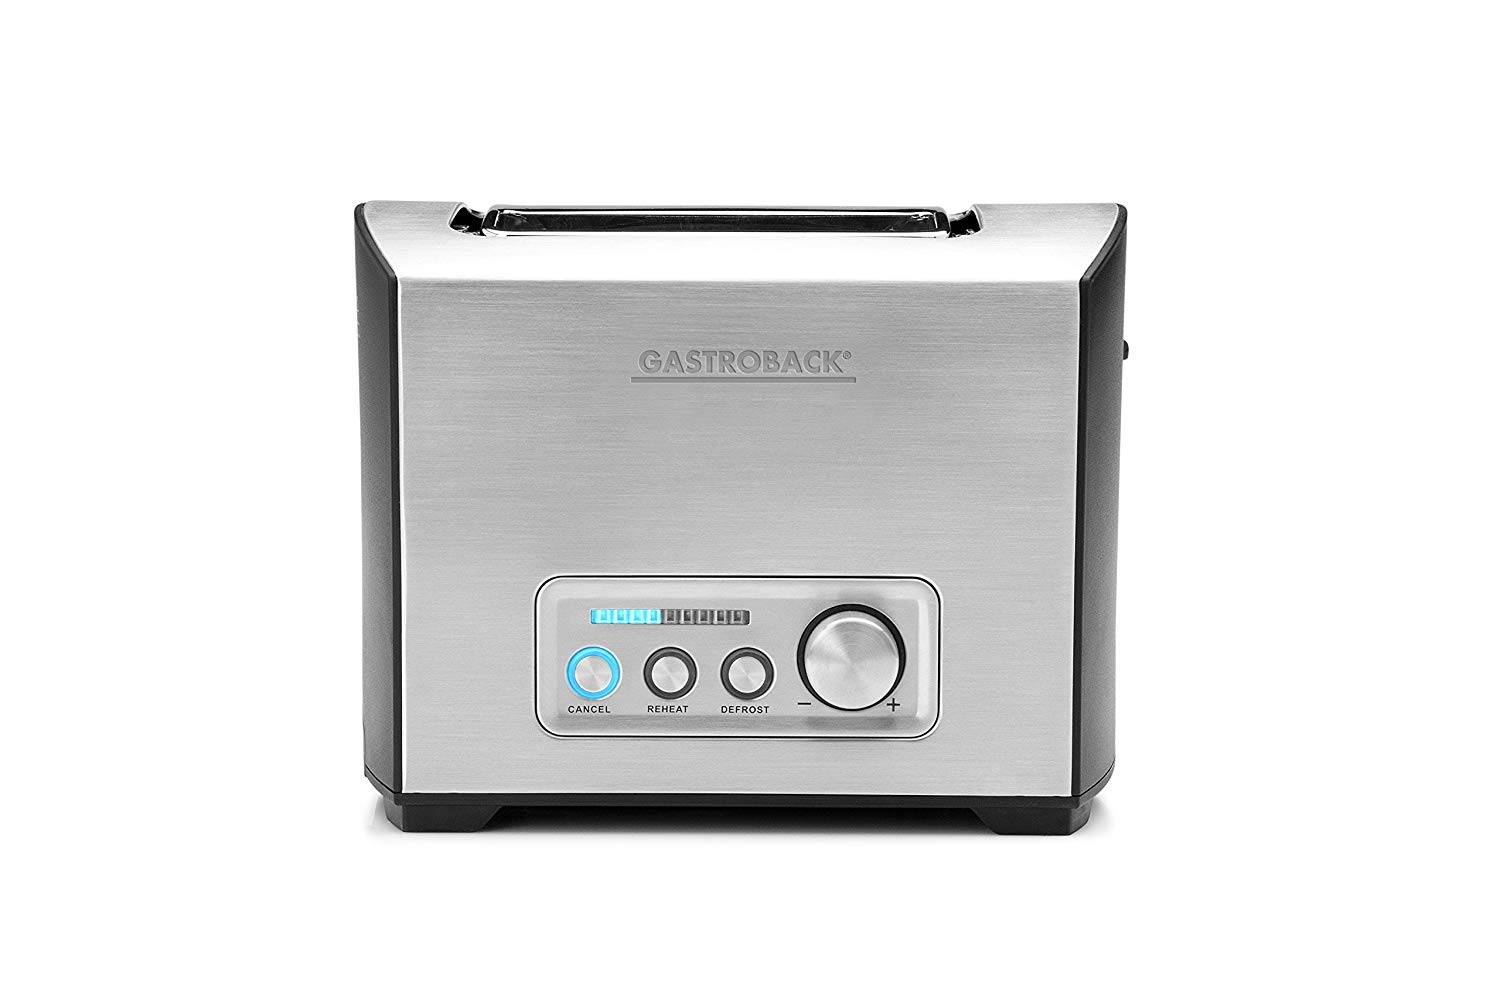 Gastroback Toaster